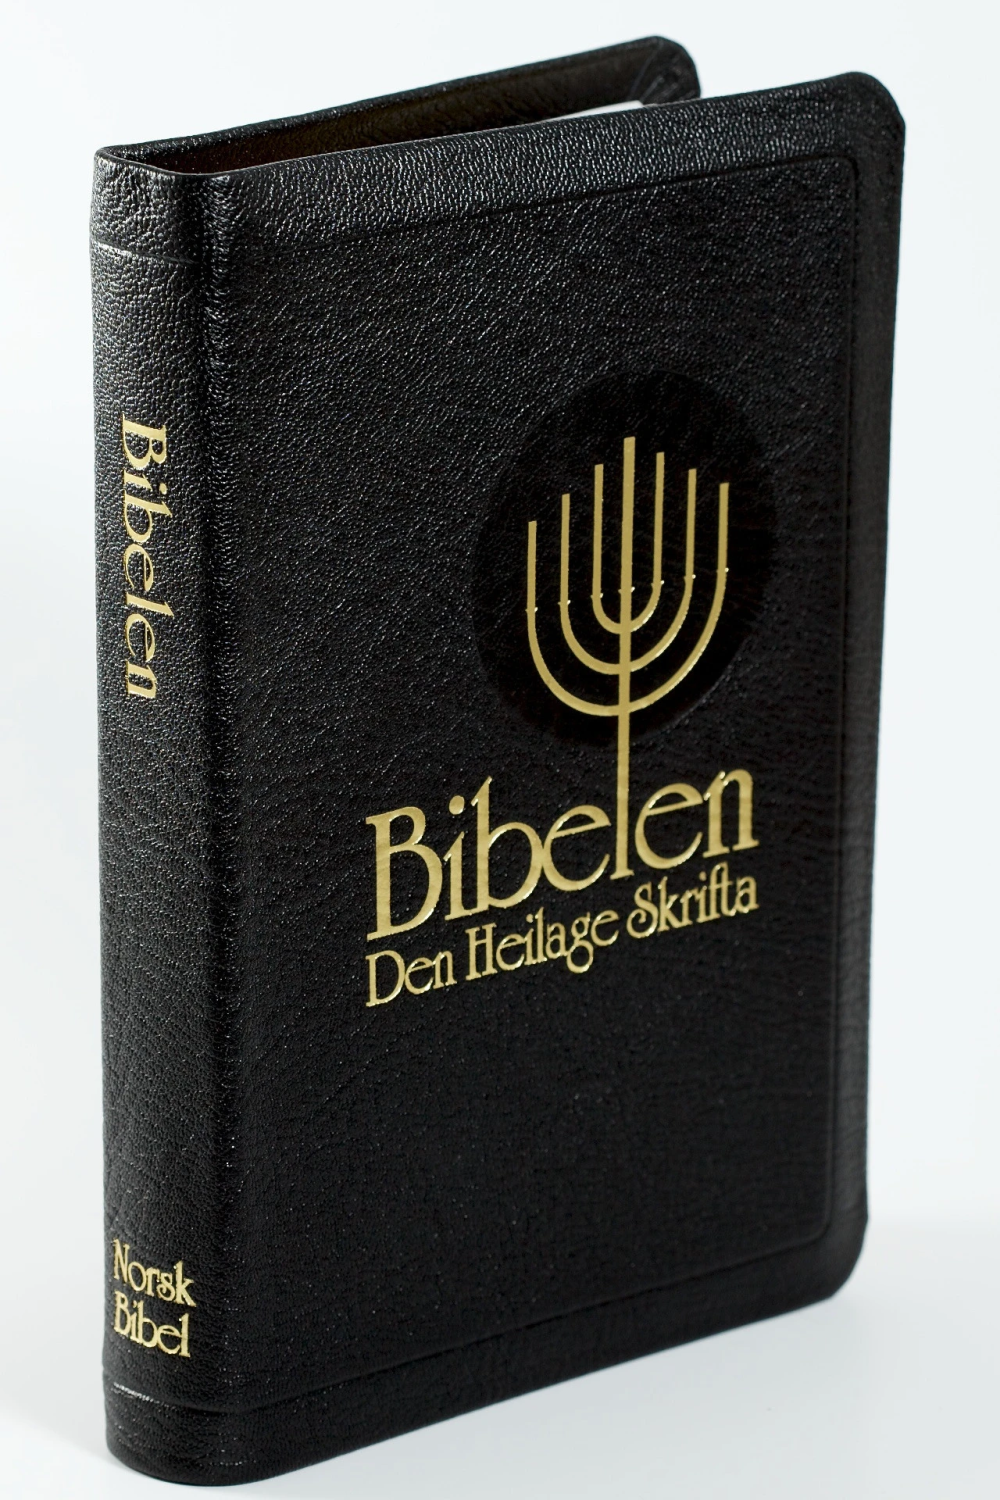 Bibelen - Den Heilage Skrifta (94), Storskrift, Svart geiteskinn (NN) Register